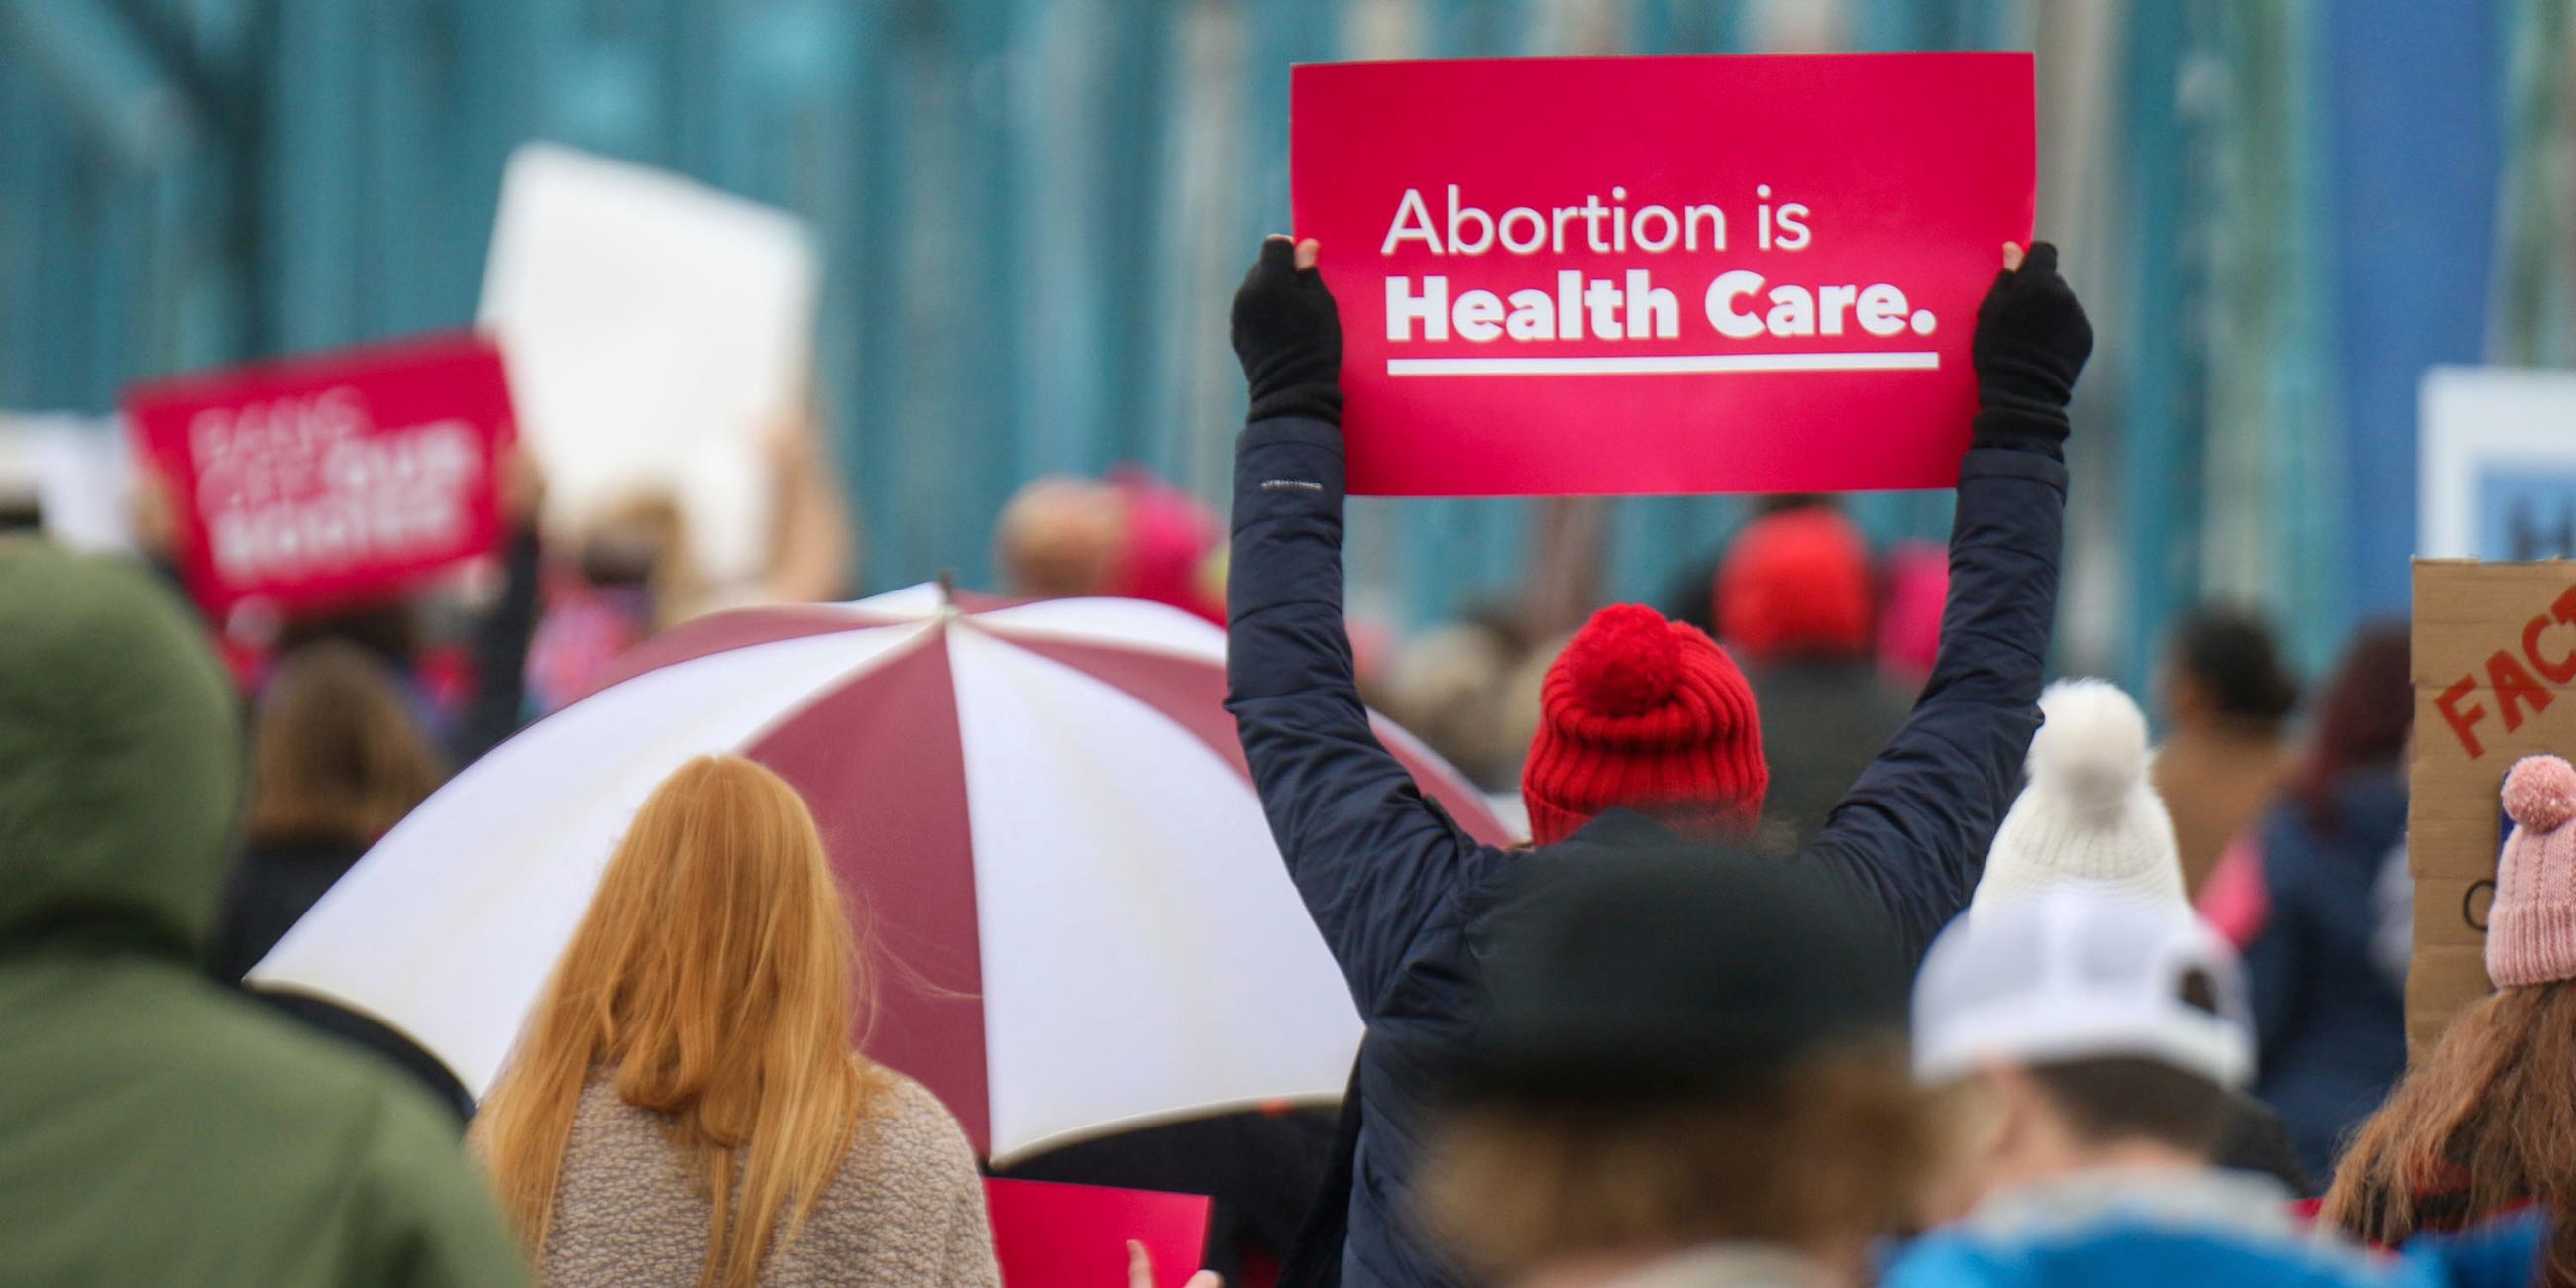 Demonstranten auf den Straßen von Chattanooga, Tennessee in den USA. Eine Person hält ein Schild mit dem Text "Abortion is Health Care.".